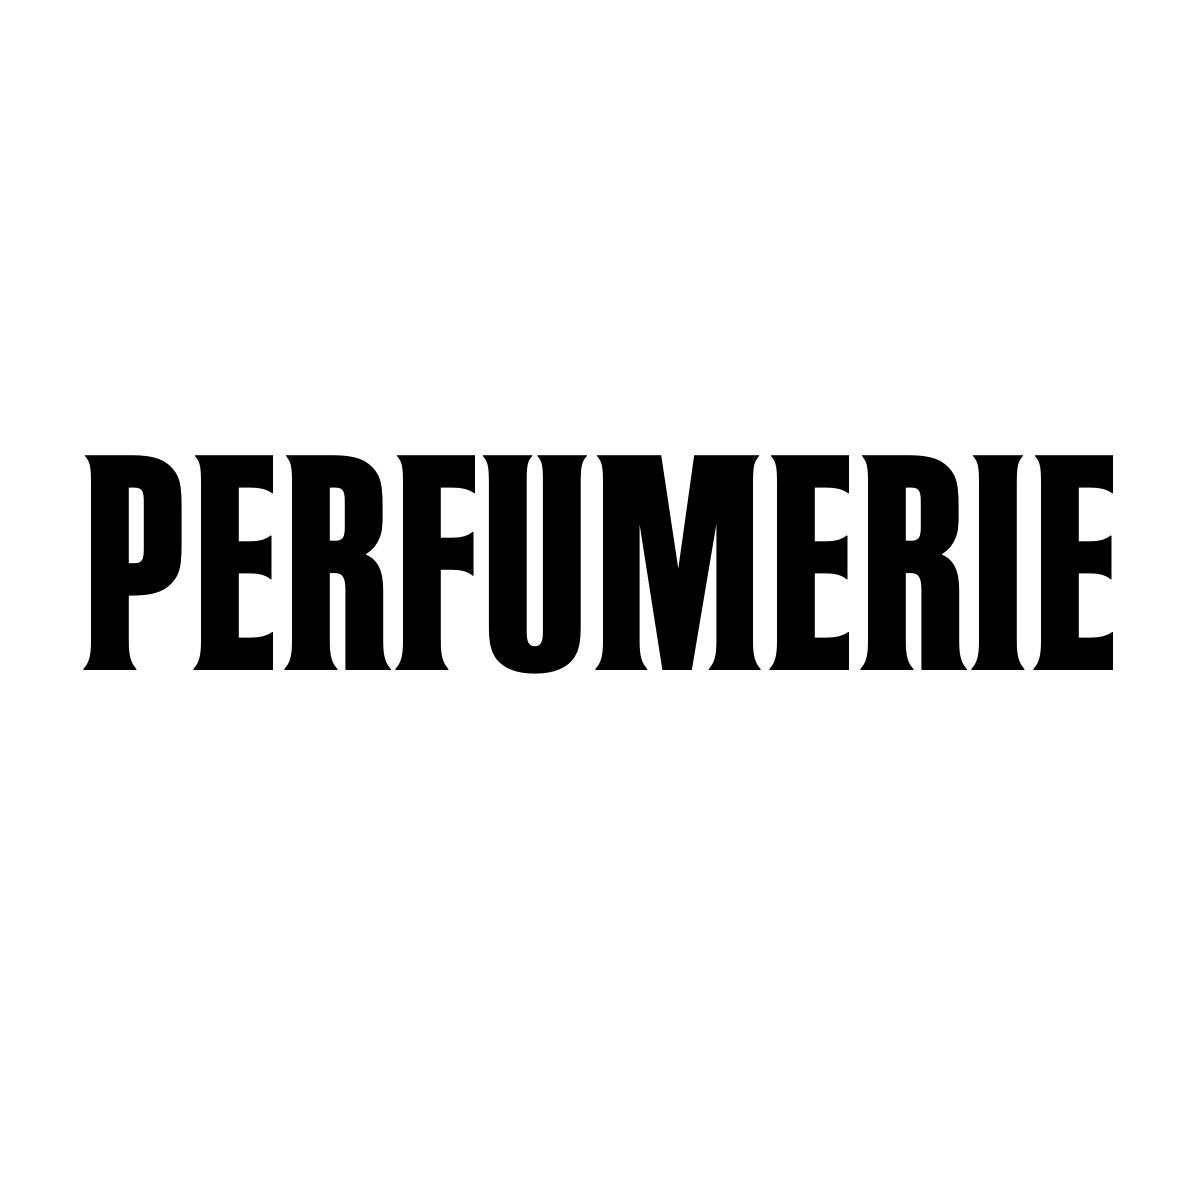 Perfumerie